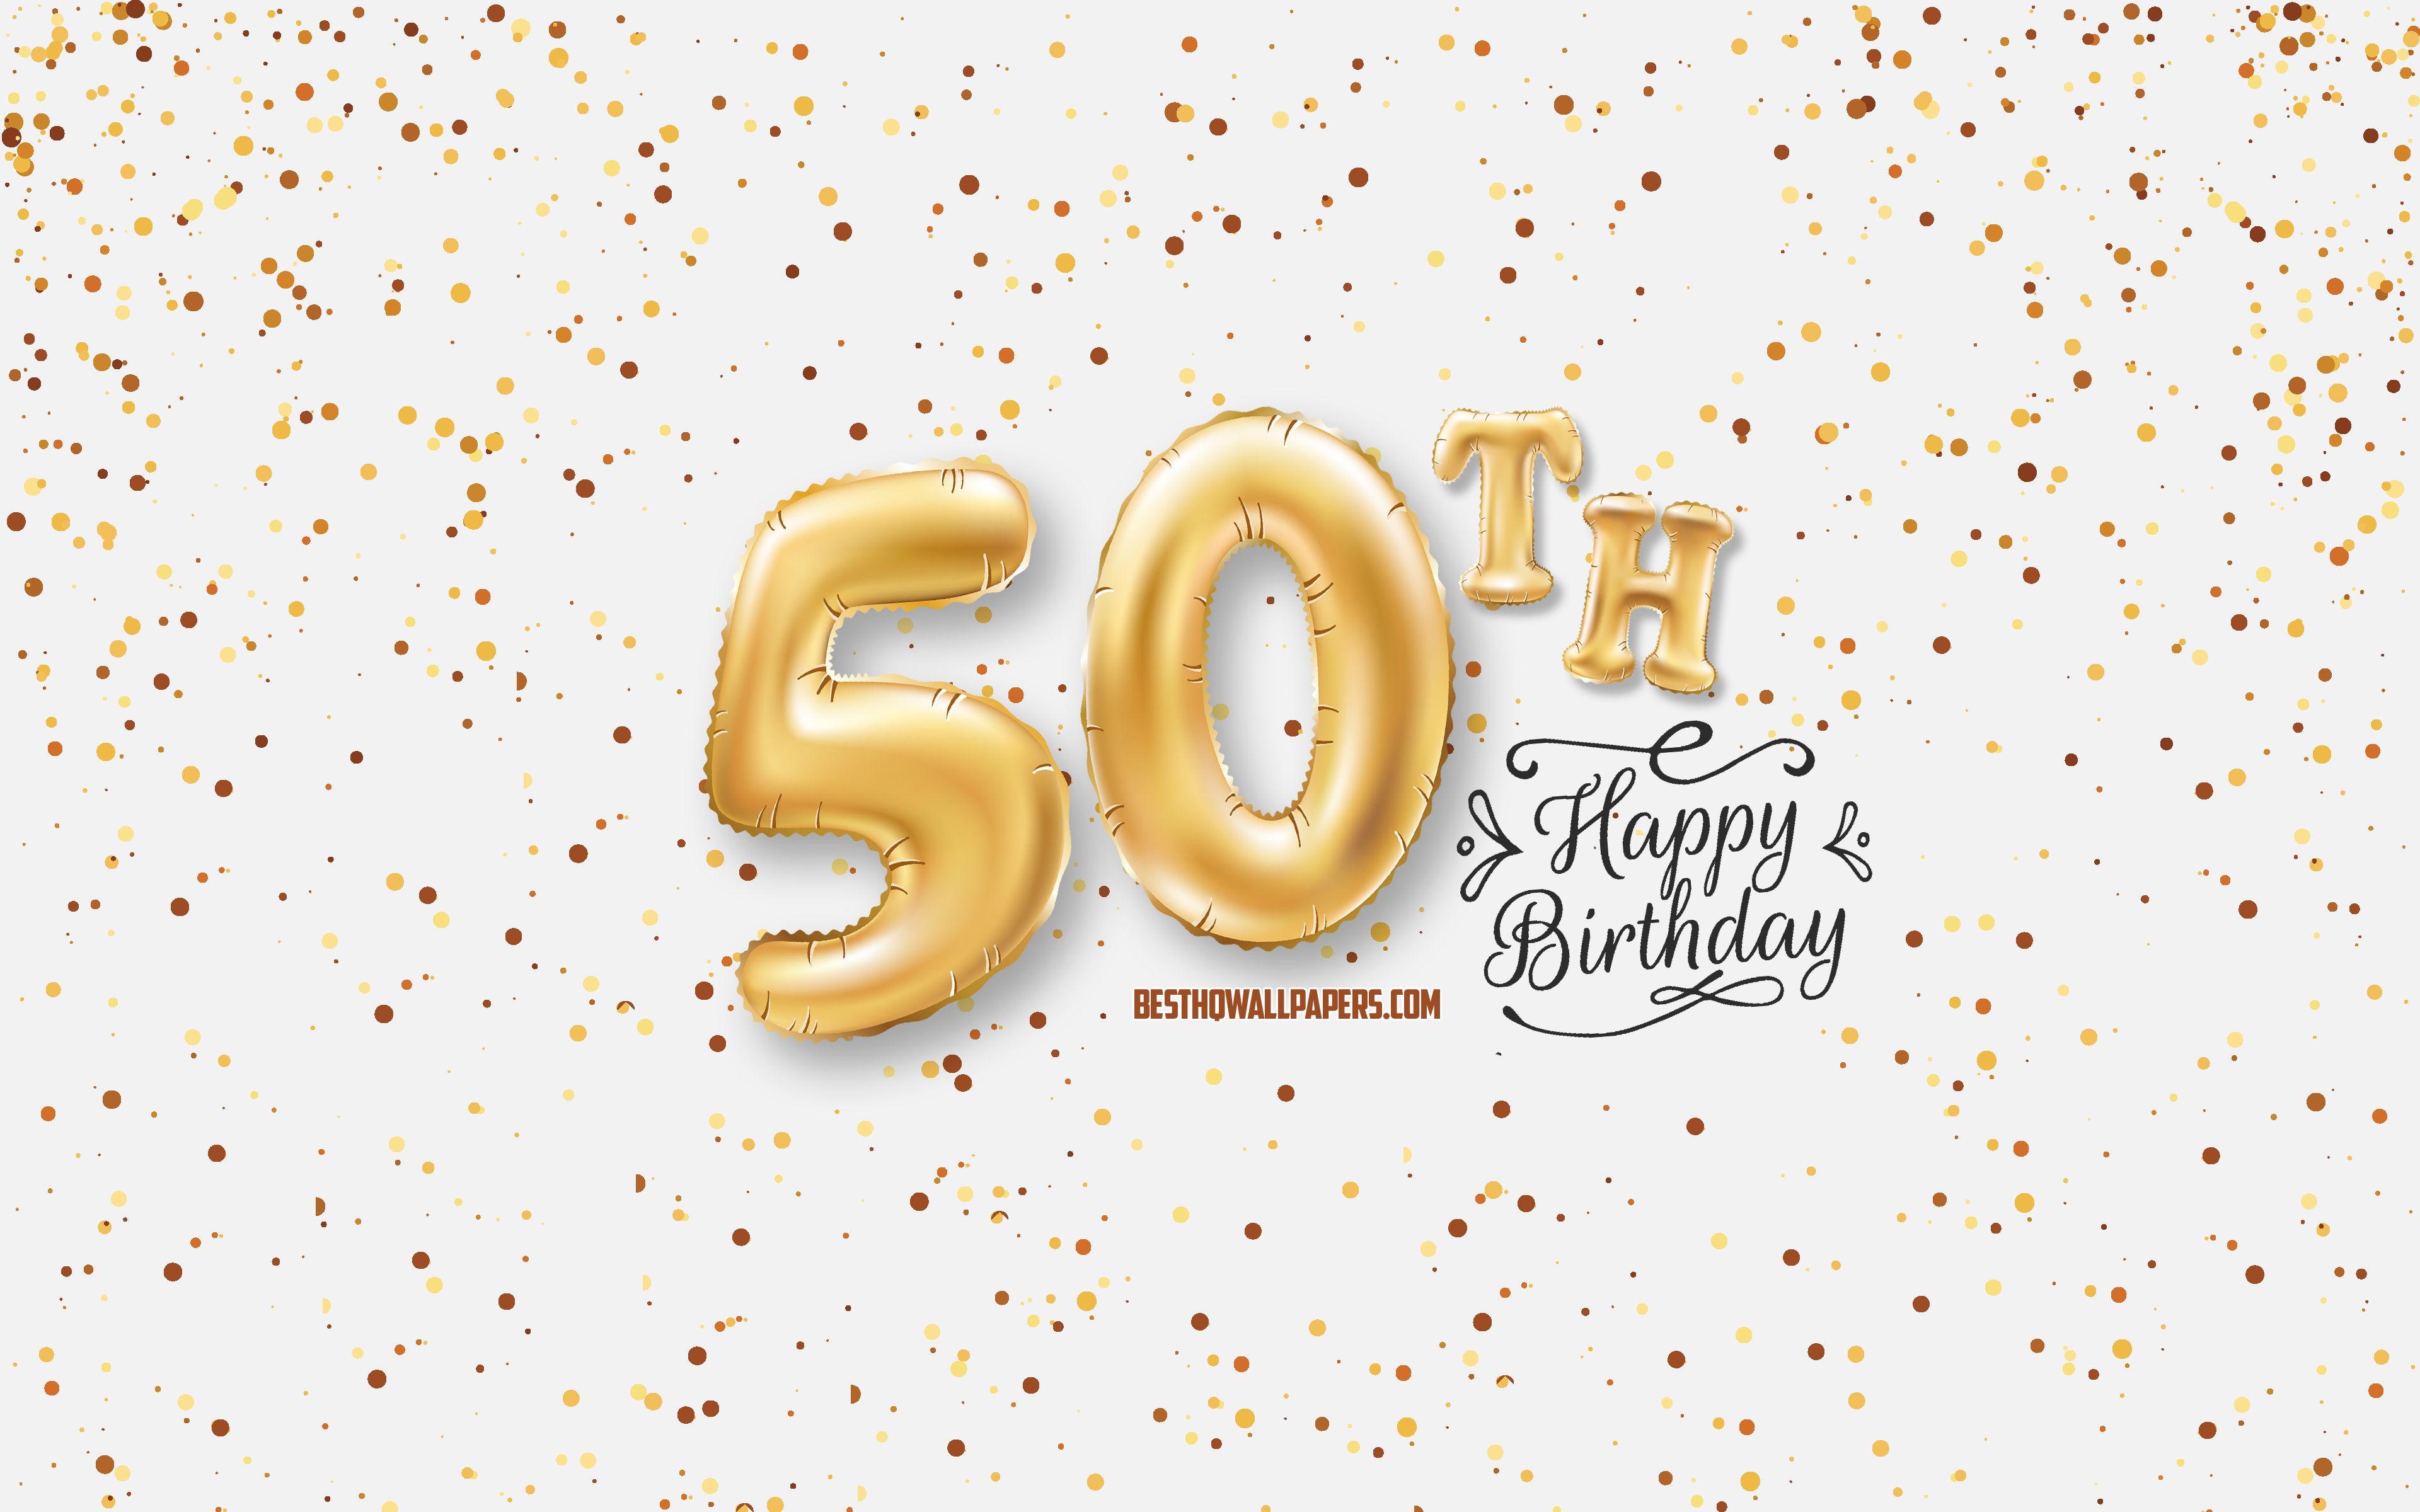 Hãy làm cho ngày sinh nhật của bạn trở nên đặc biệt hơn bao giờ hết với các hình nền sinh nhật đầy tuyệt đẹp. Dù là một bữa tiệc lộng lẫy, hay chỉ đơn giản là một ngày sinh nhật cùng gia đình, hình nền sinh nhật lần thứ 50 sẽ giúp bạn tạo ra một không gian độc đáo và đáng nhớ.